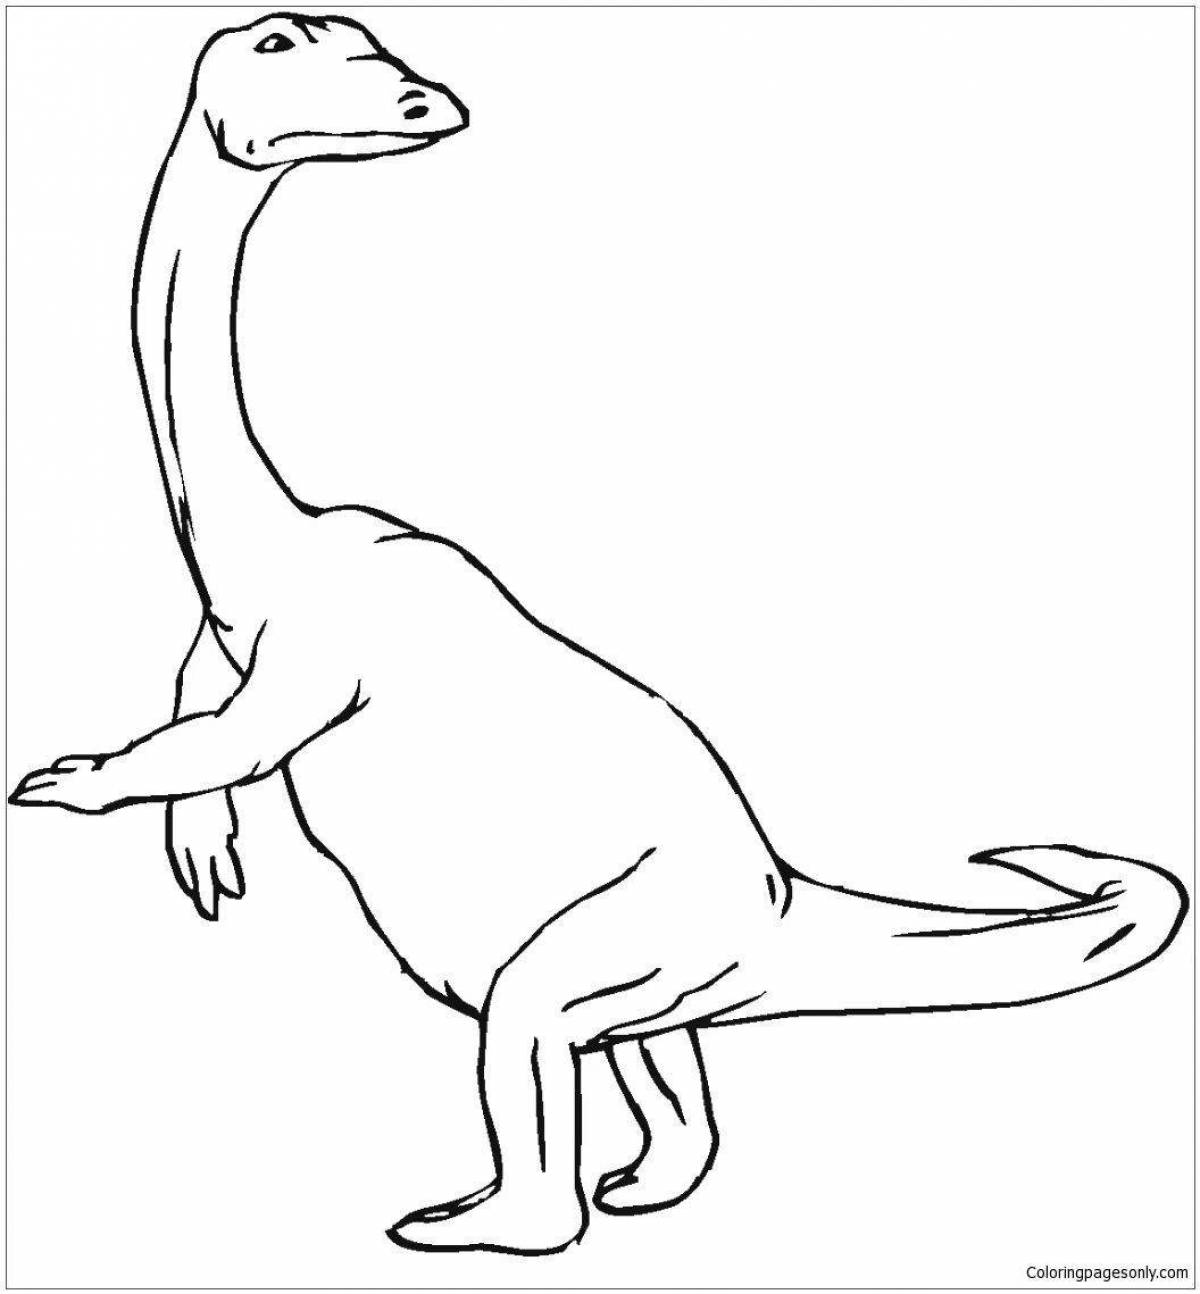 Удивительная страница раскраски динозавра барионикса